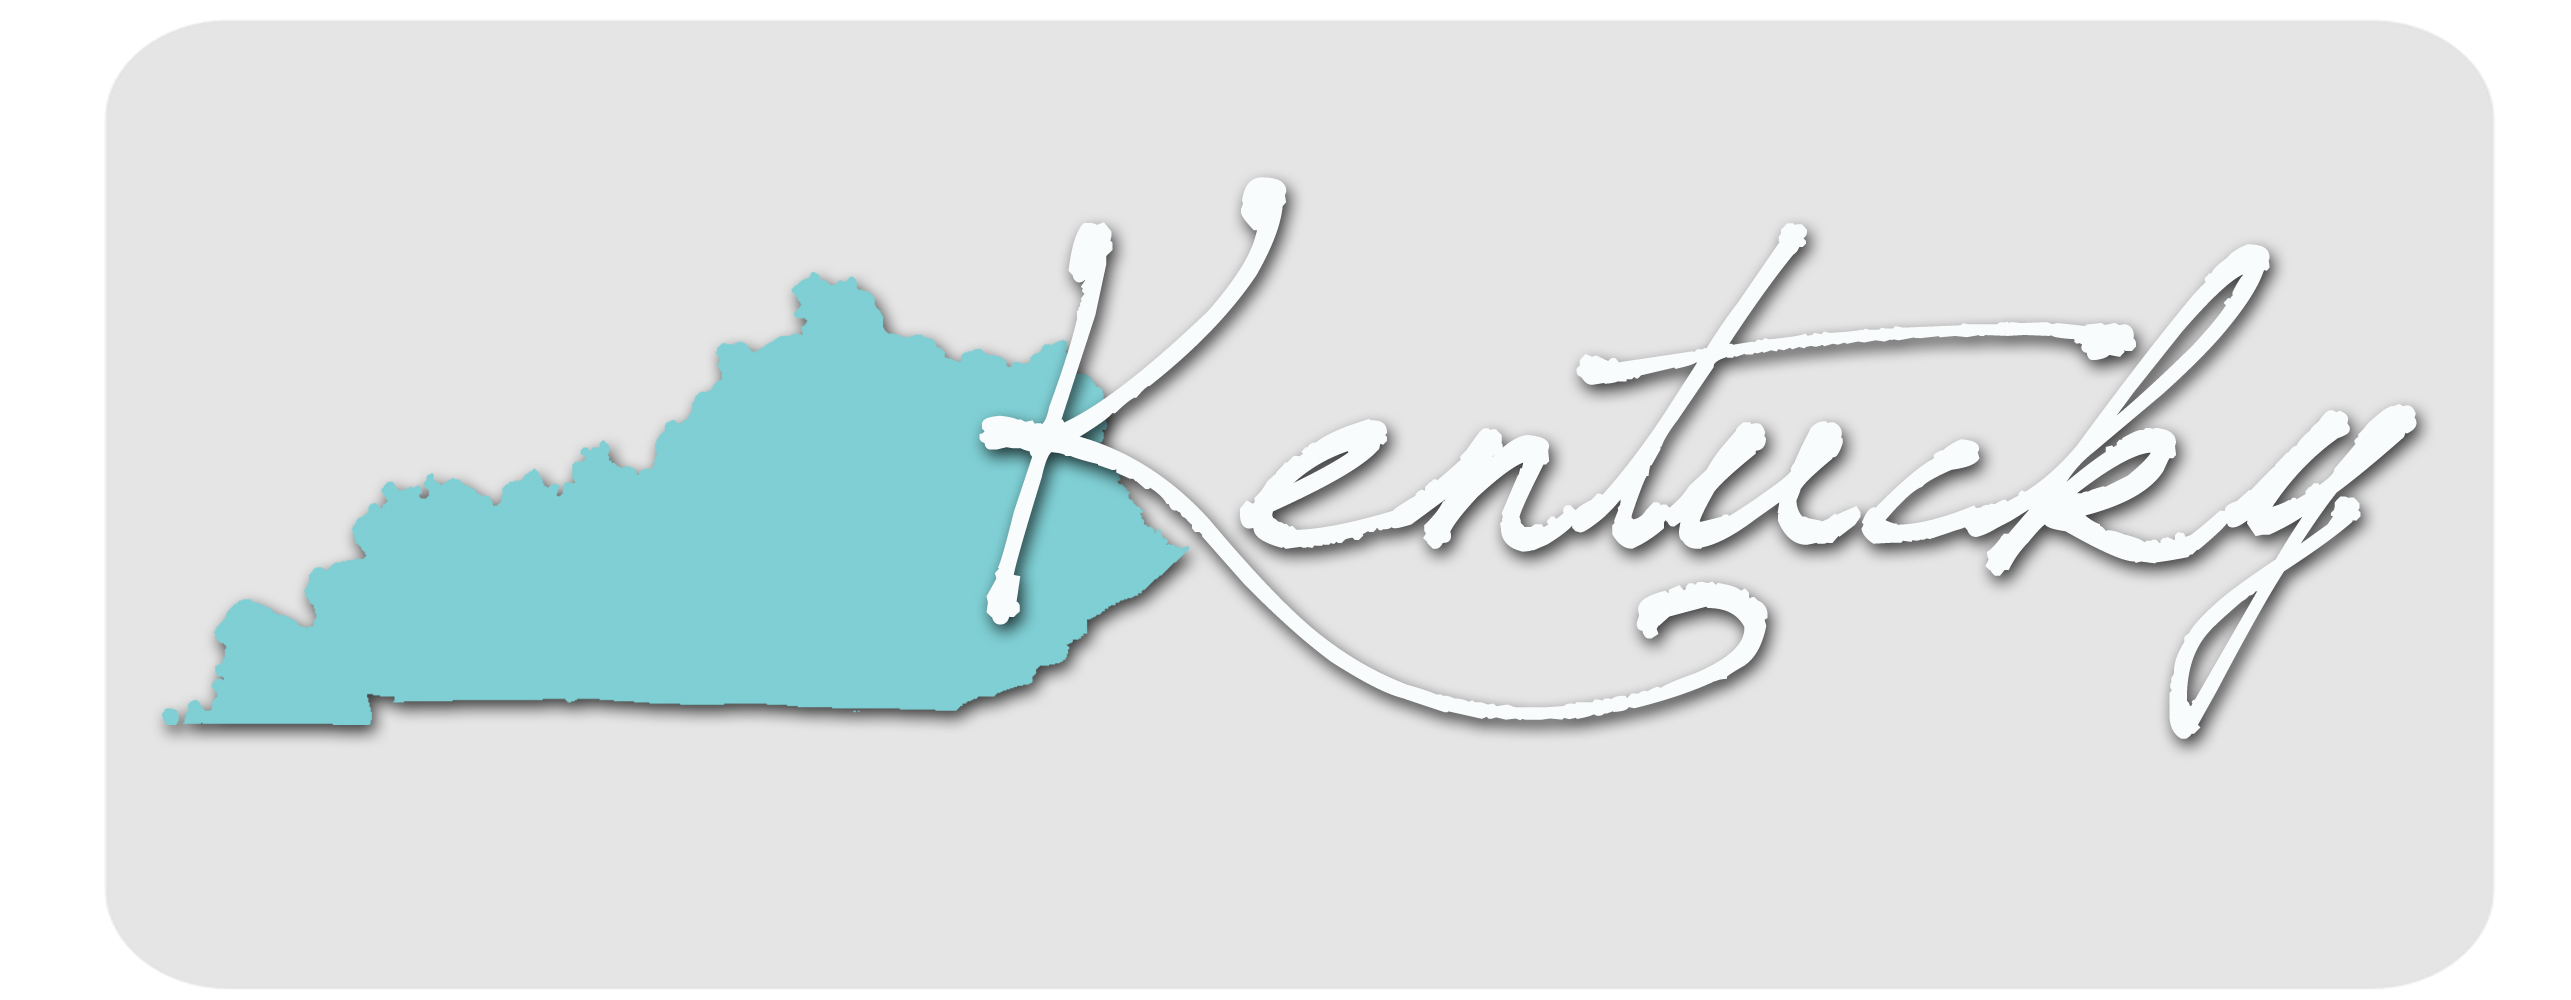 Kentucky Health Insurance